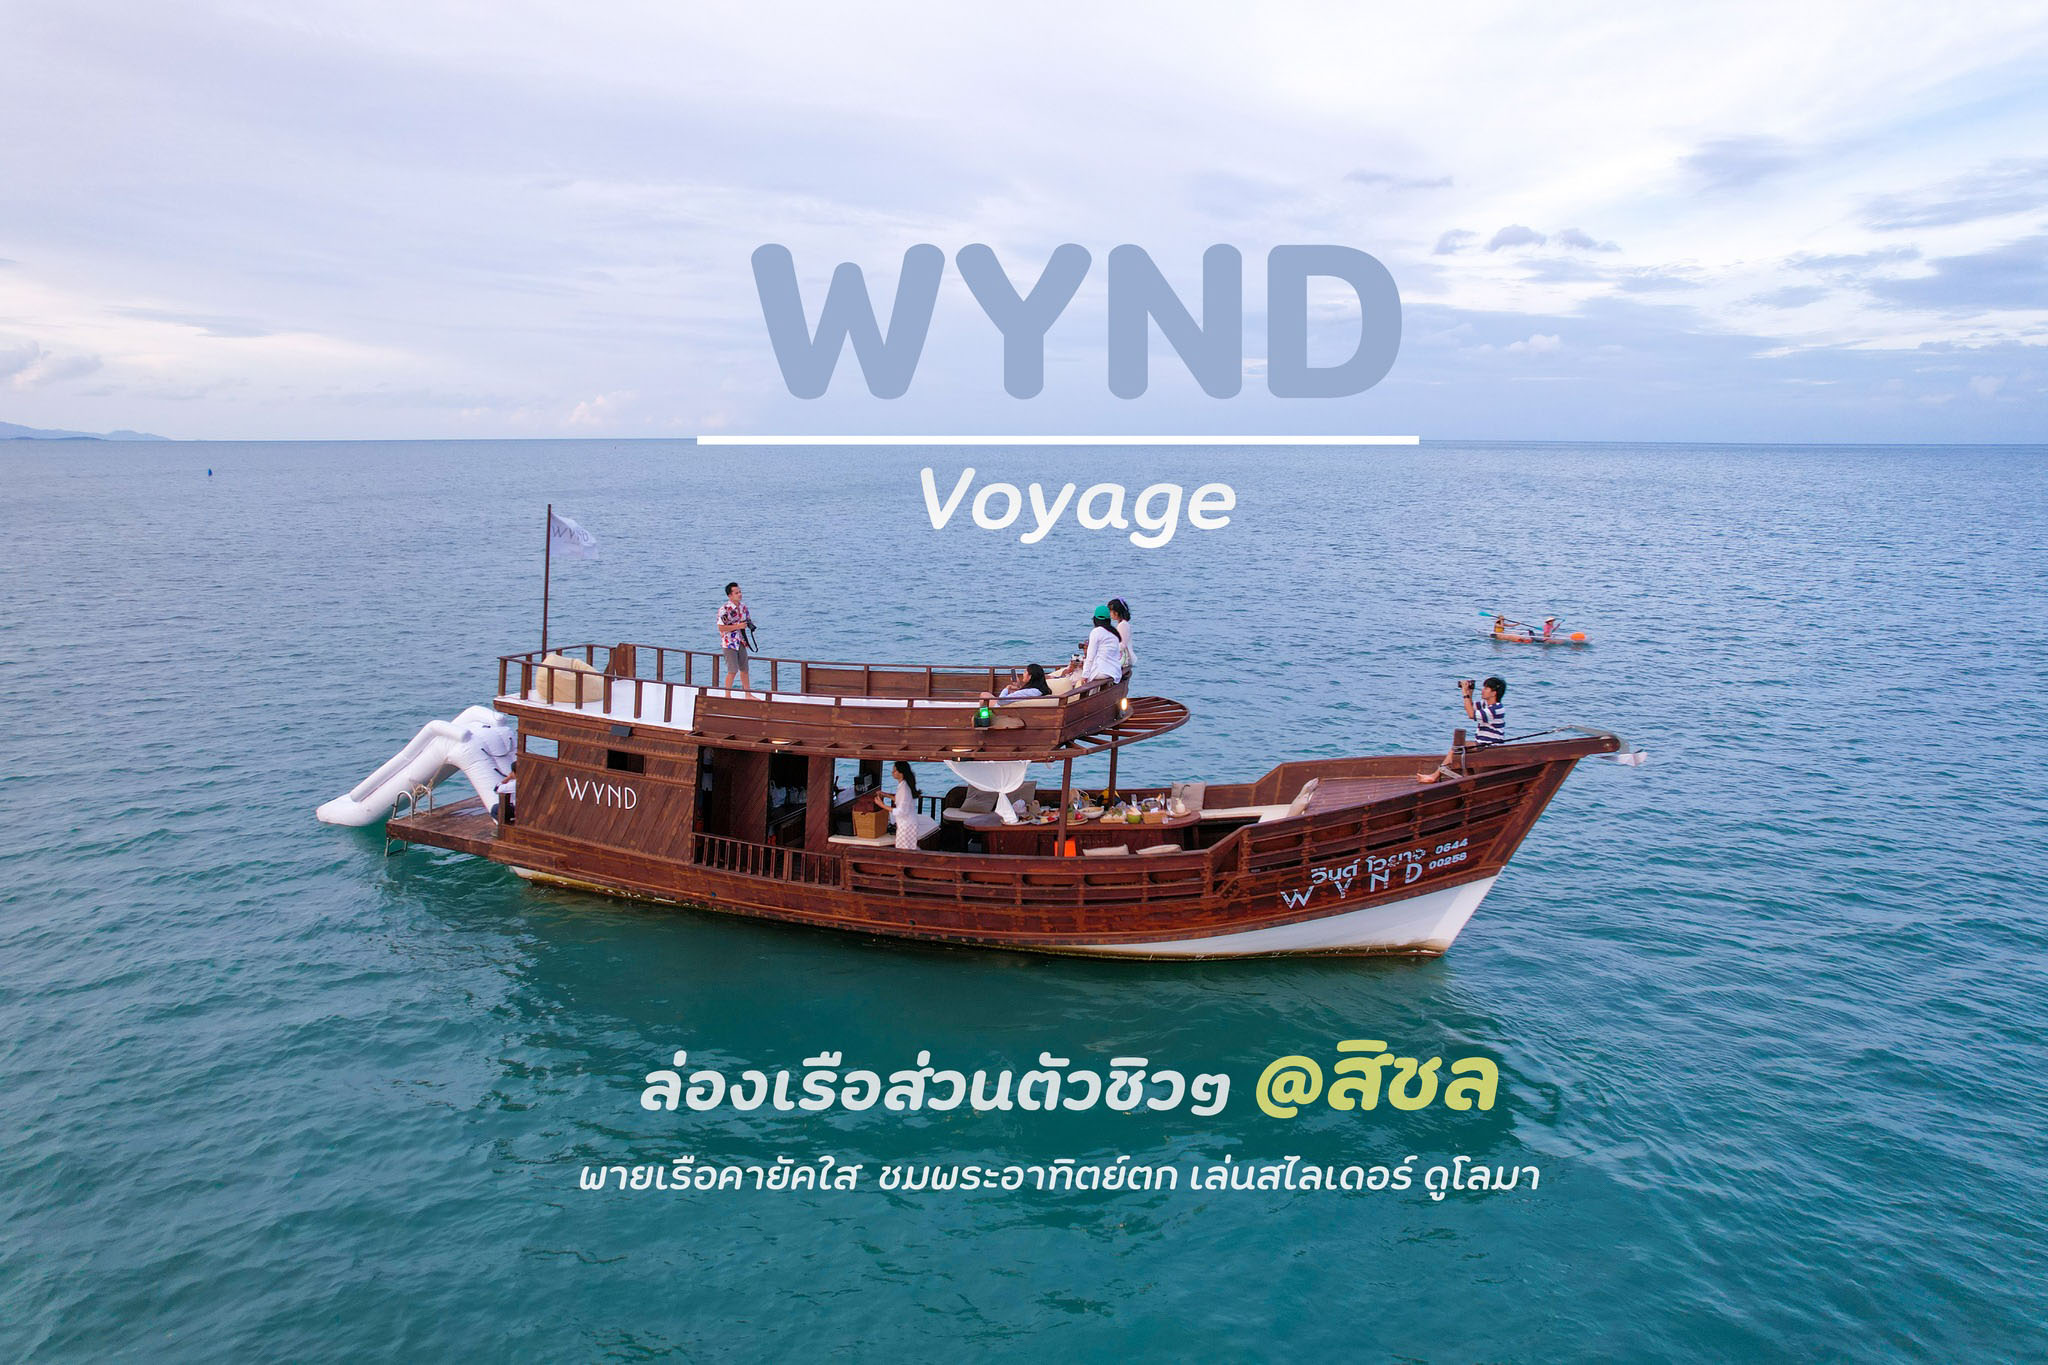 ล่องเรือส่วนตัวชิวๆ นครศรีธรรมราช ชมพระอาทิตย์ตก พายเรือคายัคใส เล่นสไลเดอร์ แวะเกาะสวยลับๆ at WYND VOYAGE